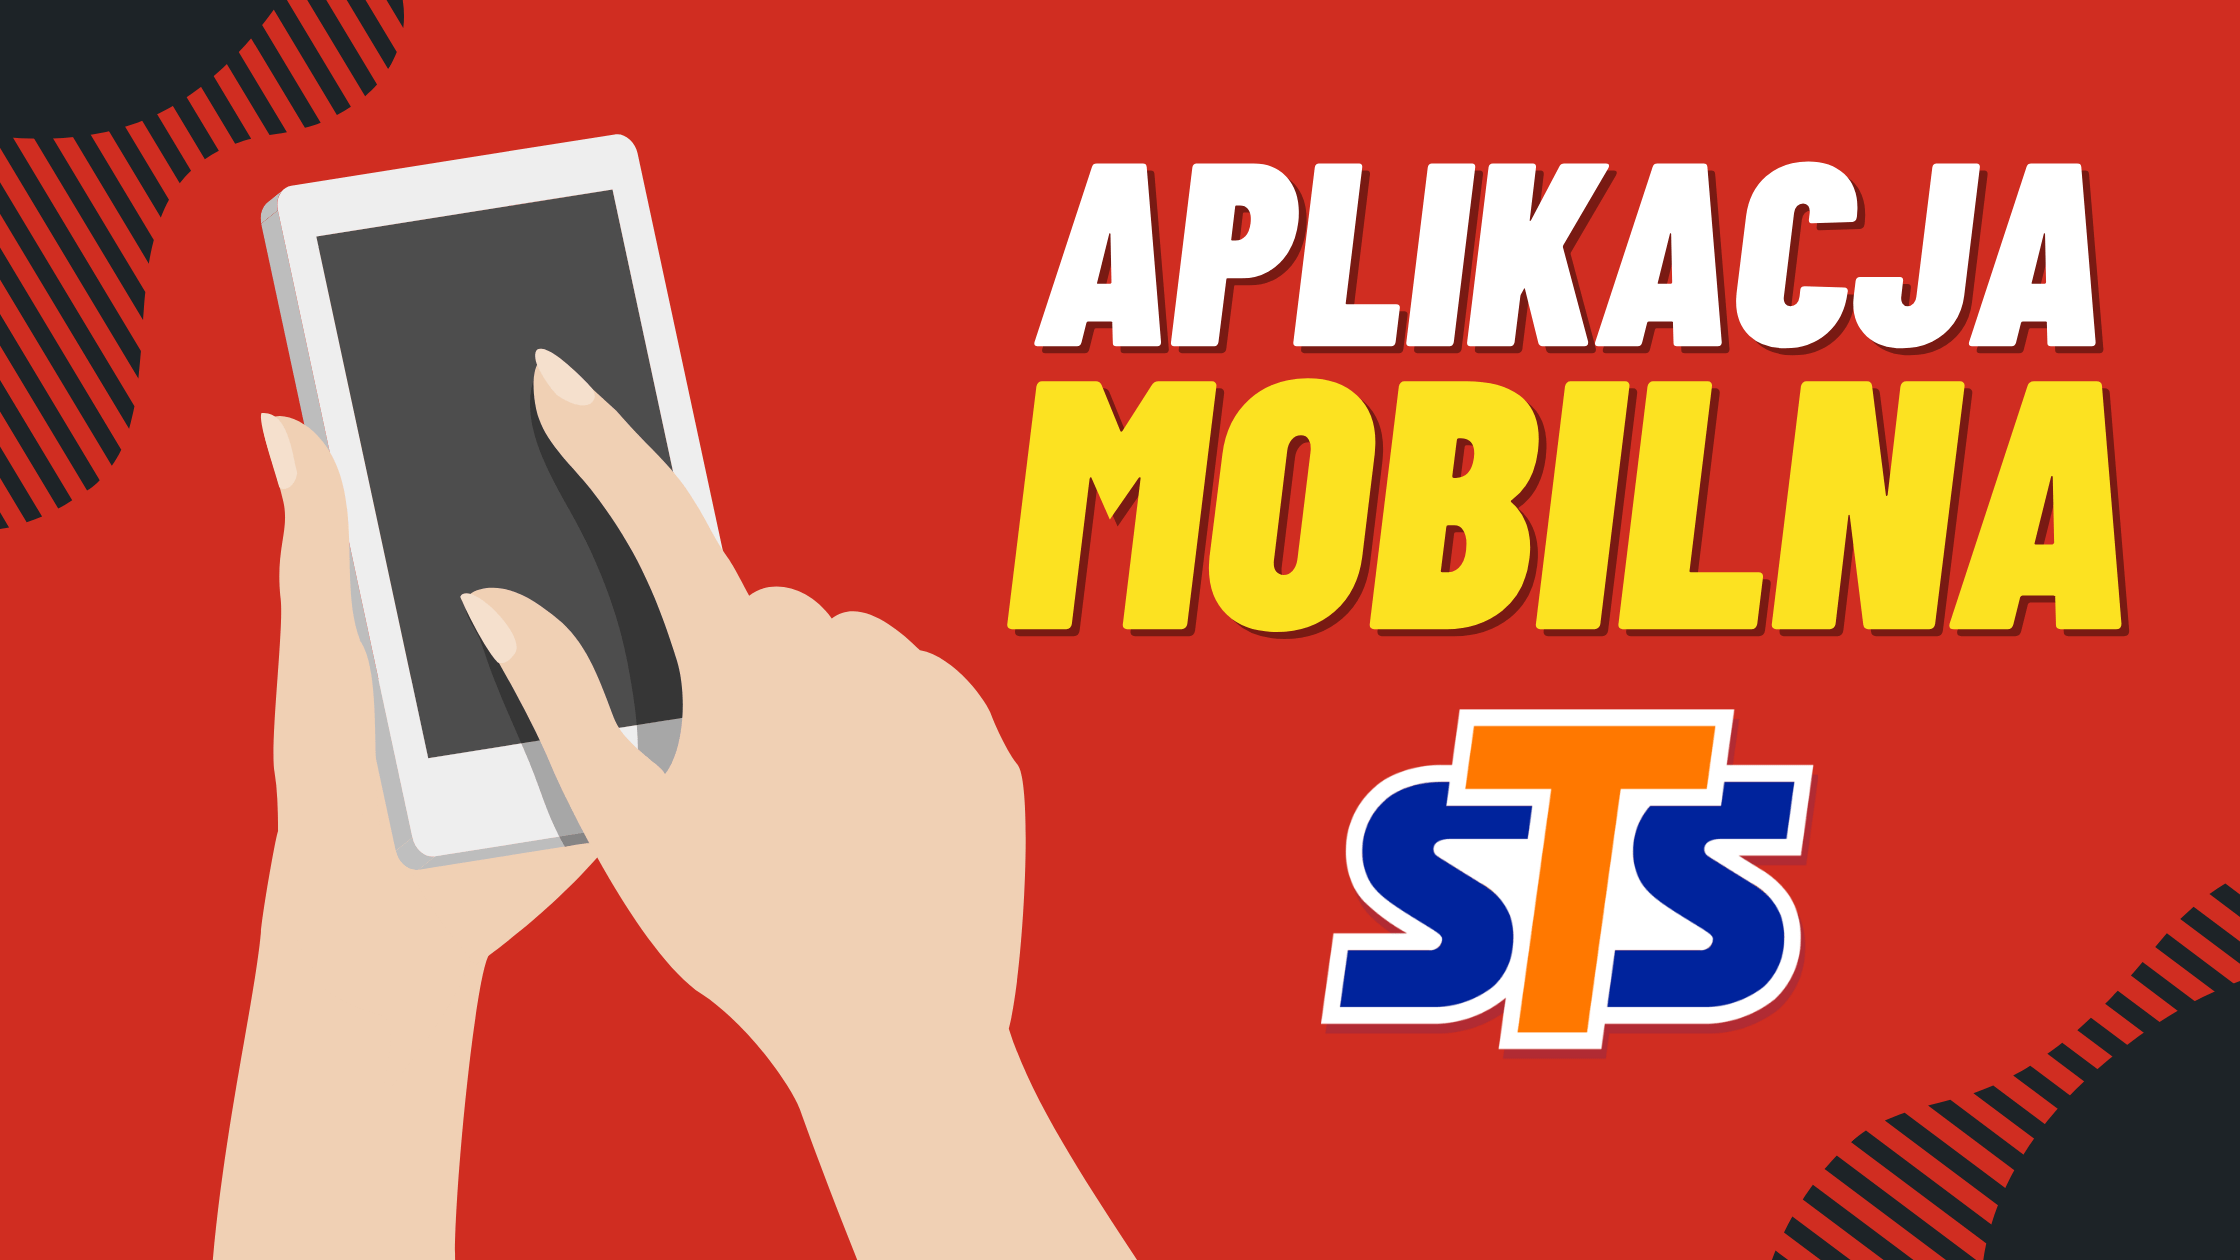 Aplikacja mobilna STS dla Android i Iphone